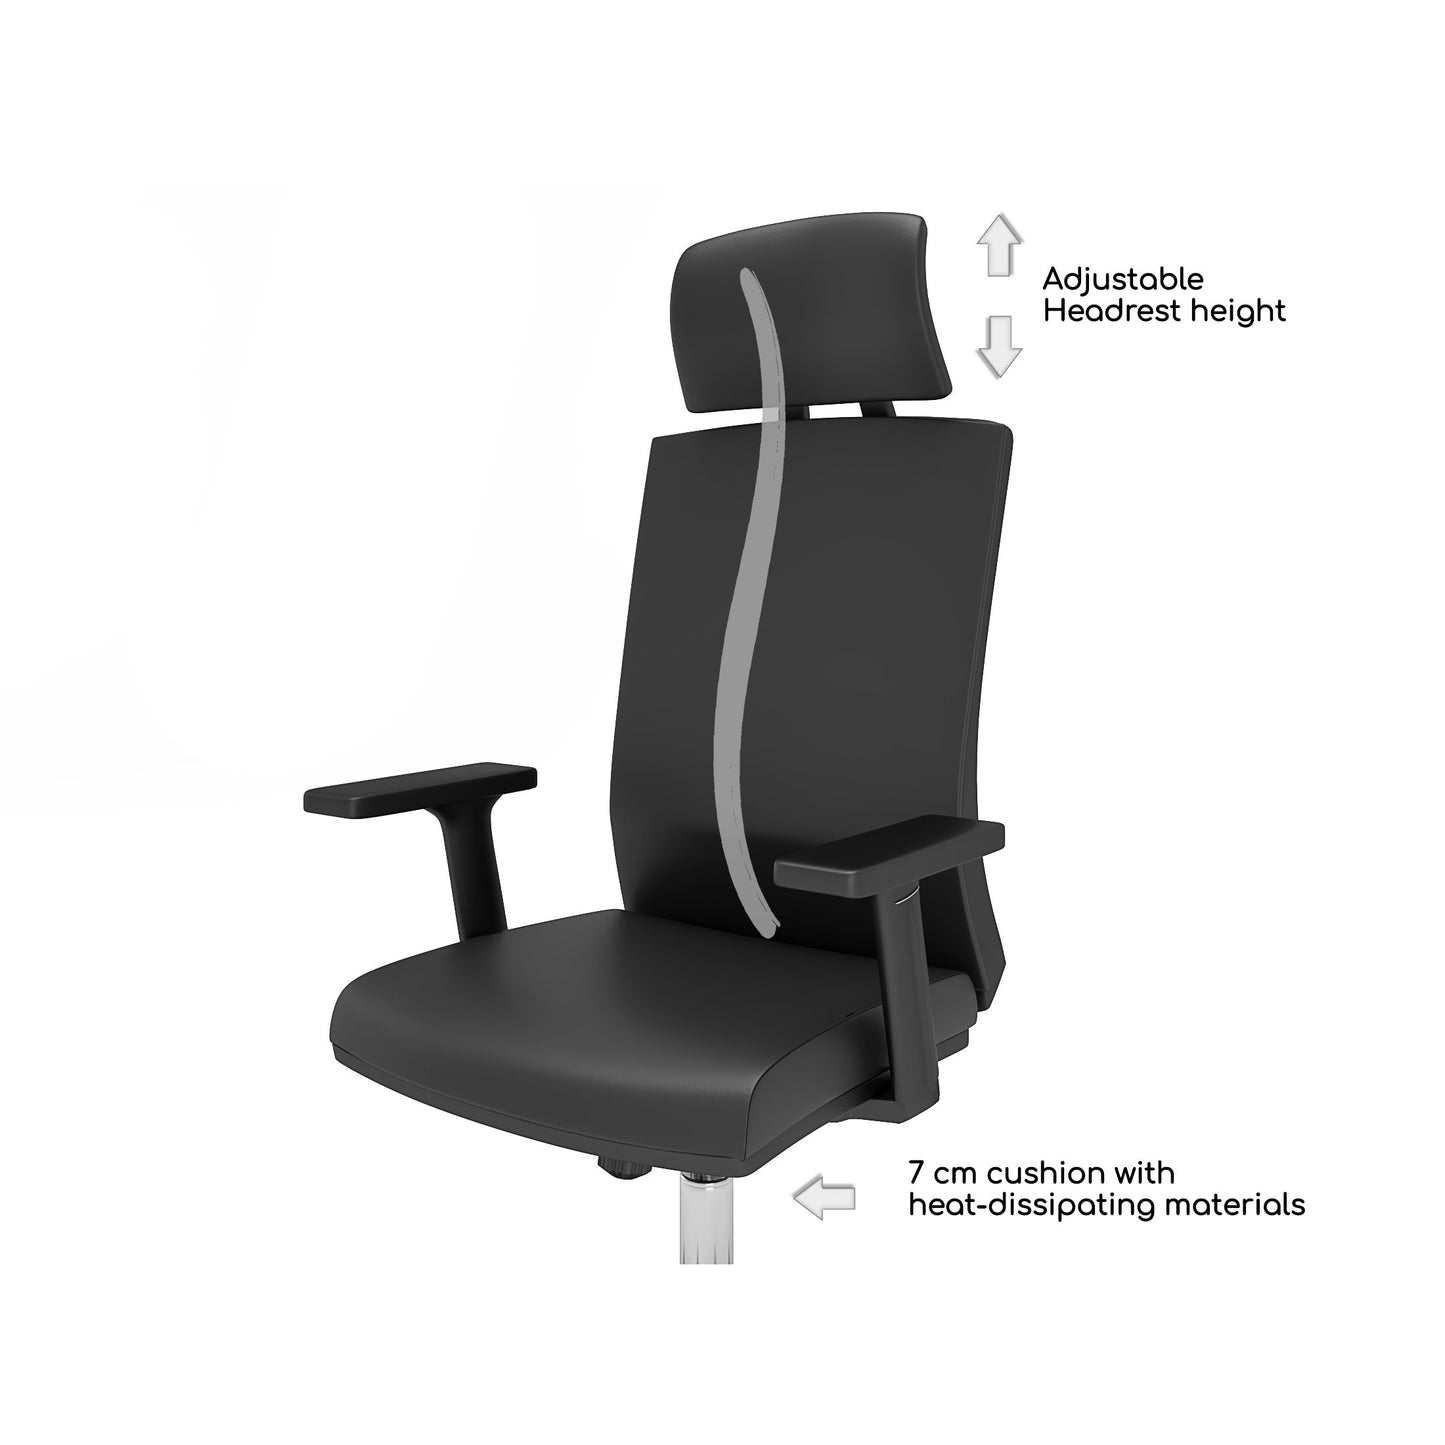 Chaise de bureau Nancy's Windham - Chaise pivotante - Dossier inclinable - Ergonomique - Appui-tête - Marron - Simili cuir - Plastique - 65 x 63 x 120-130 cm